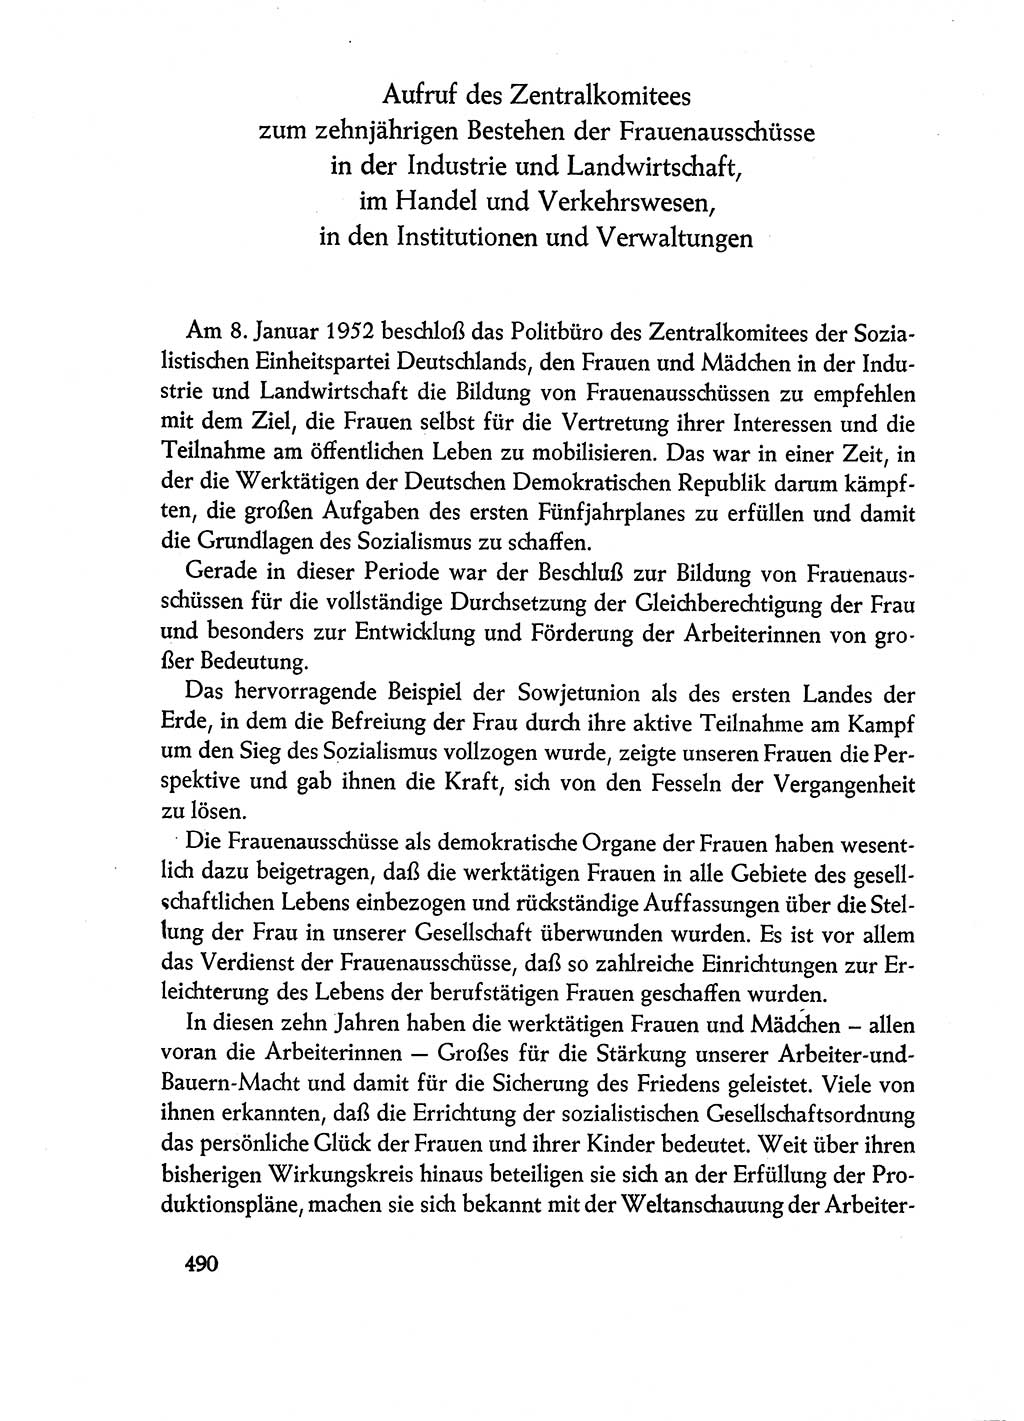 Dokumente der Sozialistischen Einheitspartei Deutschlands (SED) [Deutsche Demokratische Republik (DDR)] 1960-1961, Seite 490 (Dok. SED DDR 1960-1961, S. 490)